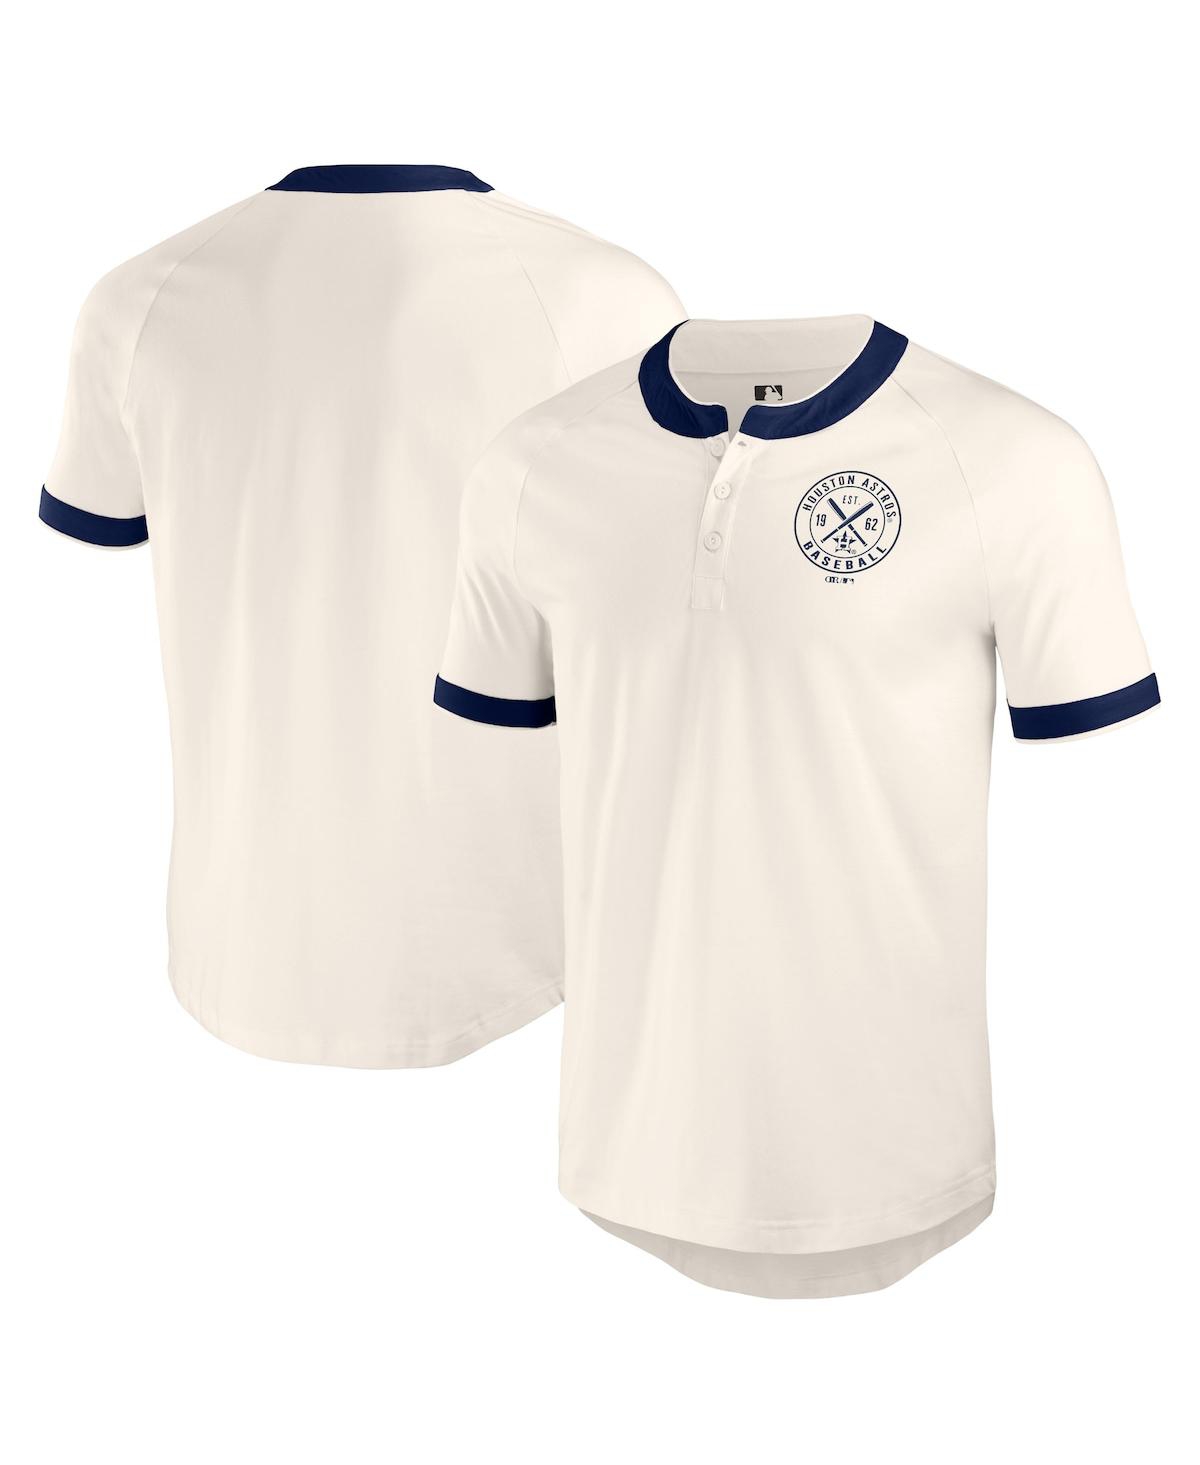 Darius Rucker Men's Collection by Fanatics White Houston Astros Henley Raglan T-Shirt - White, Navy